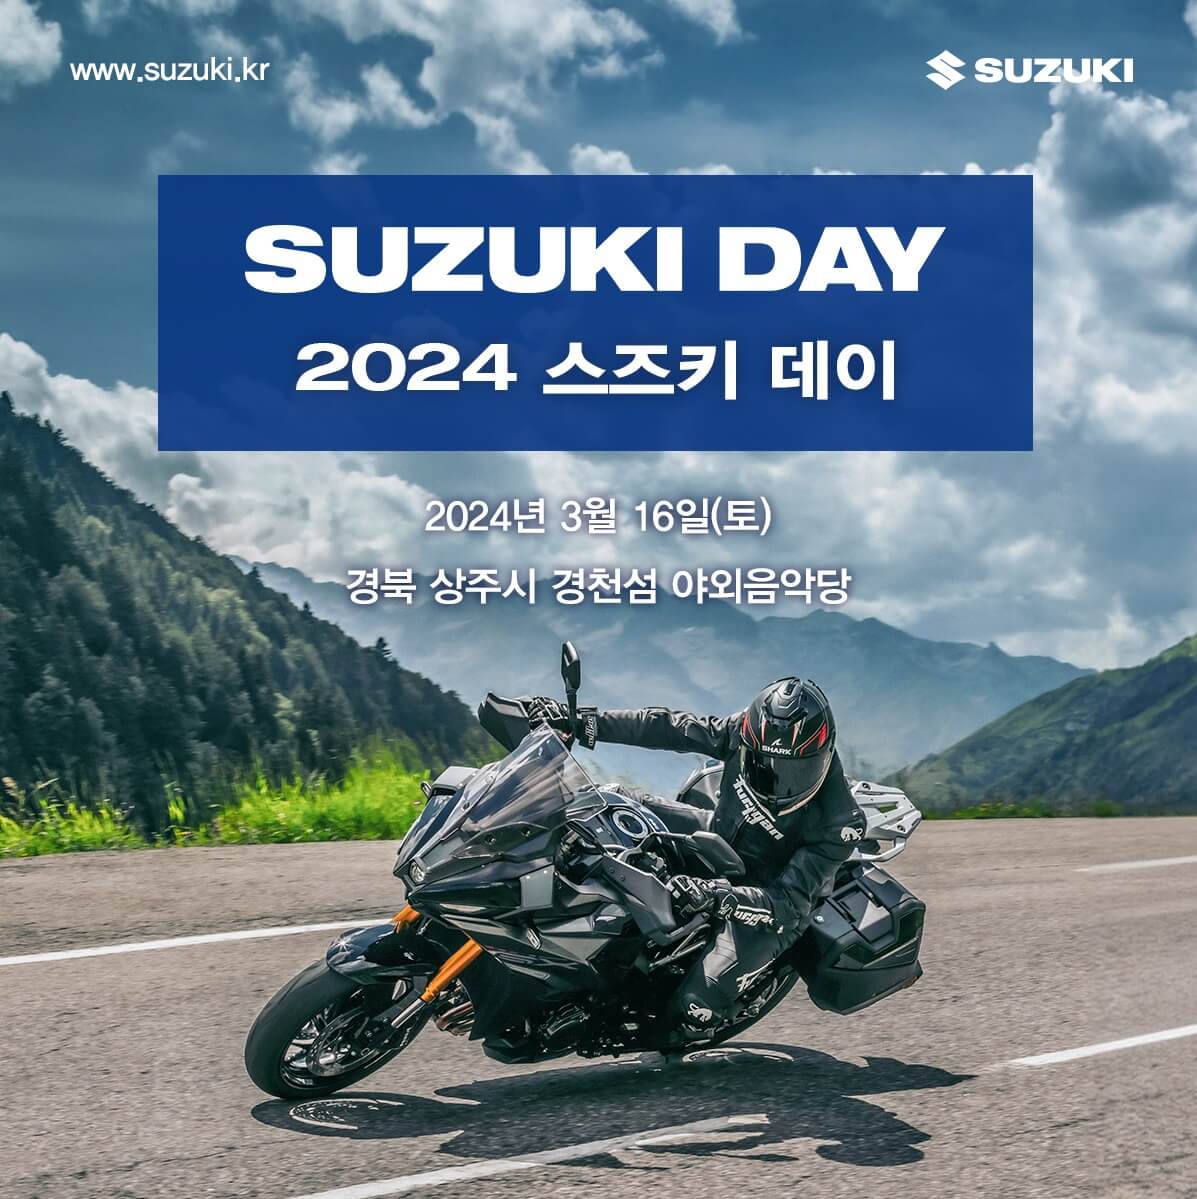 SUZUKI DAY 2024